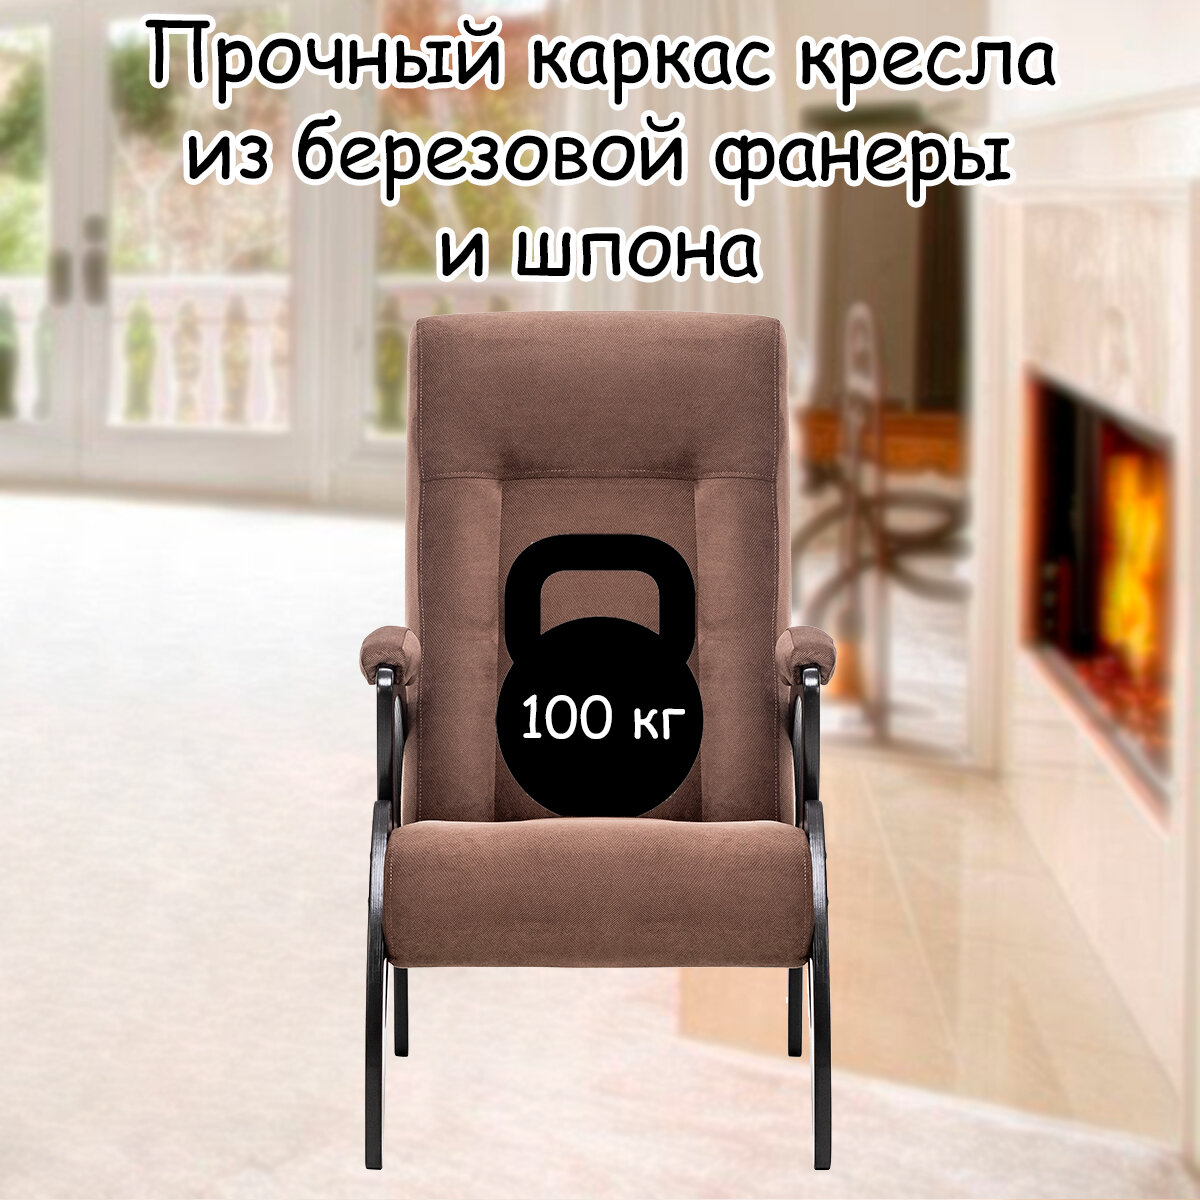 Кресло для взрослых 58.5х87х99 см, модель 51, verona, цвет: Brown (коричневый), каркас: Venge (черный) - фотография № 3